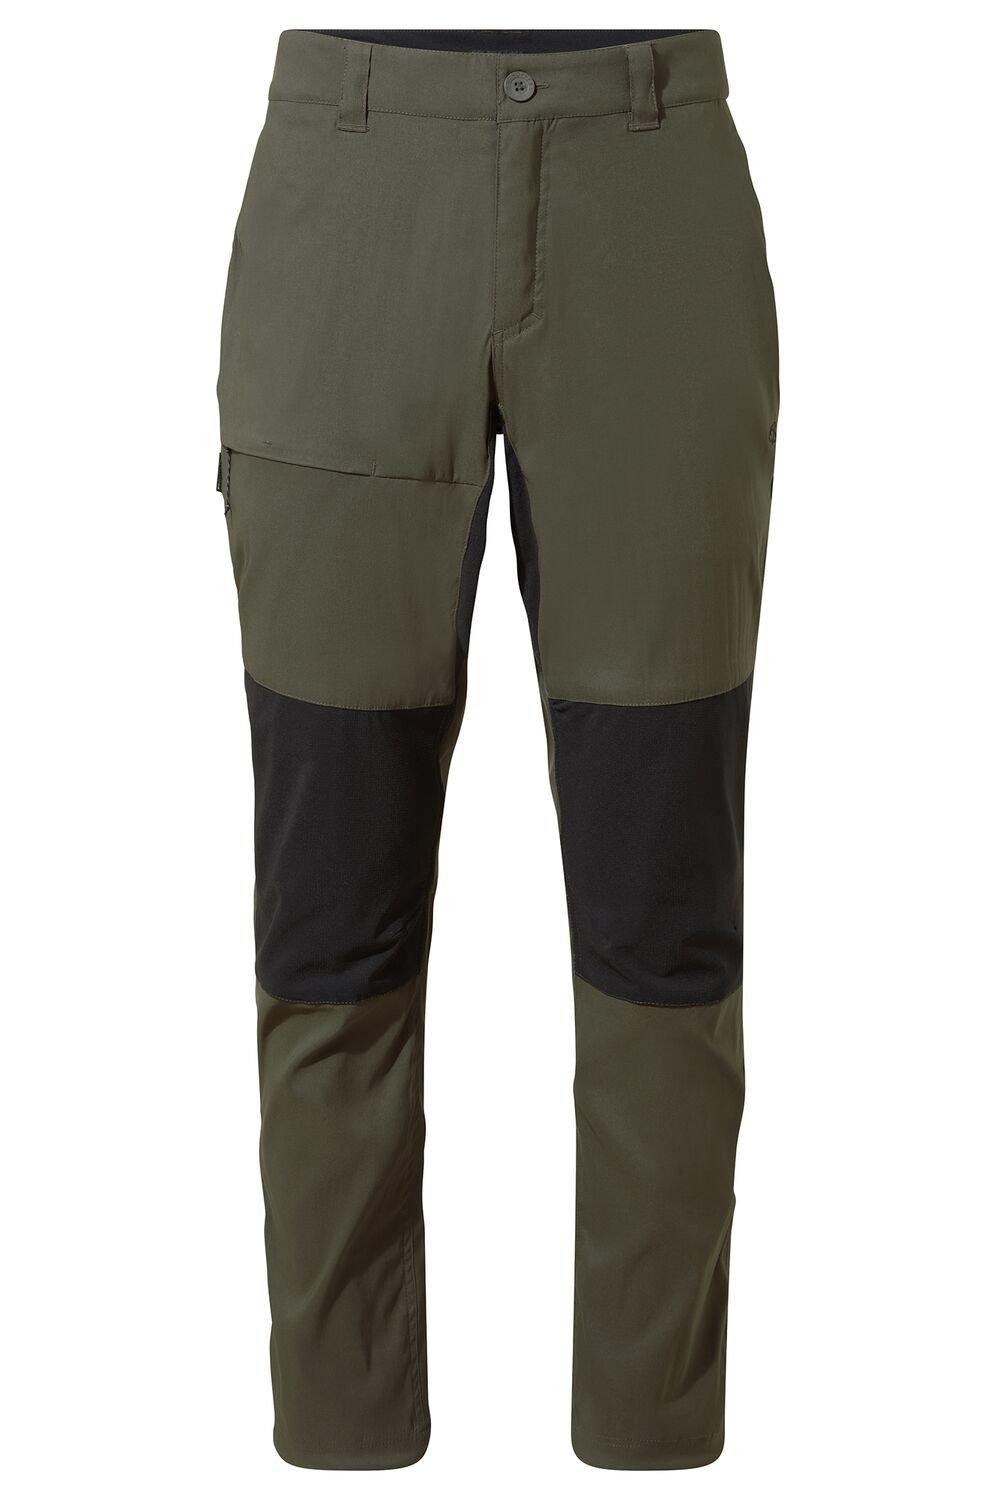 Походные брюки Nosi Defense 'Kiwi Pro Active' Craghoppers, зеленый брюки bona fashion suede trousers бежевый s